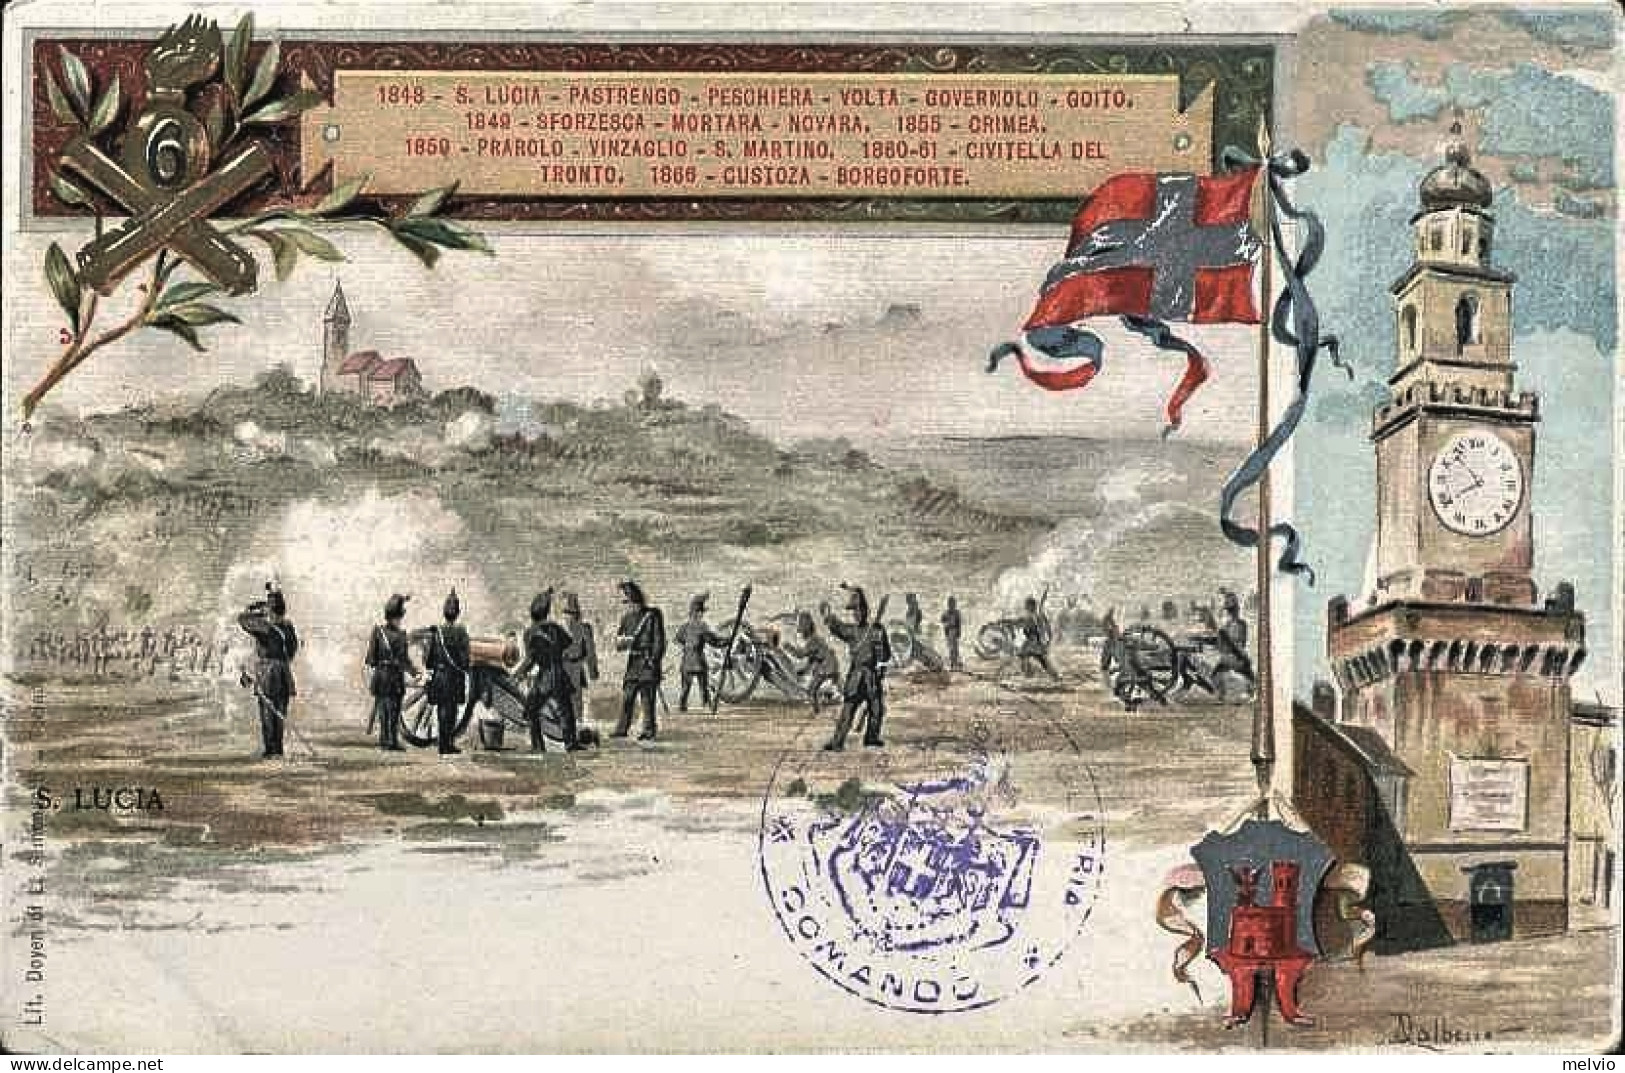 1904-"6 Reggimento Artiglieria" - Patriotiques